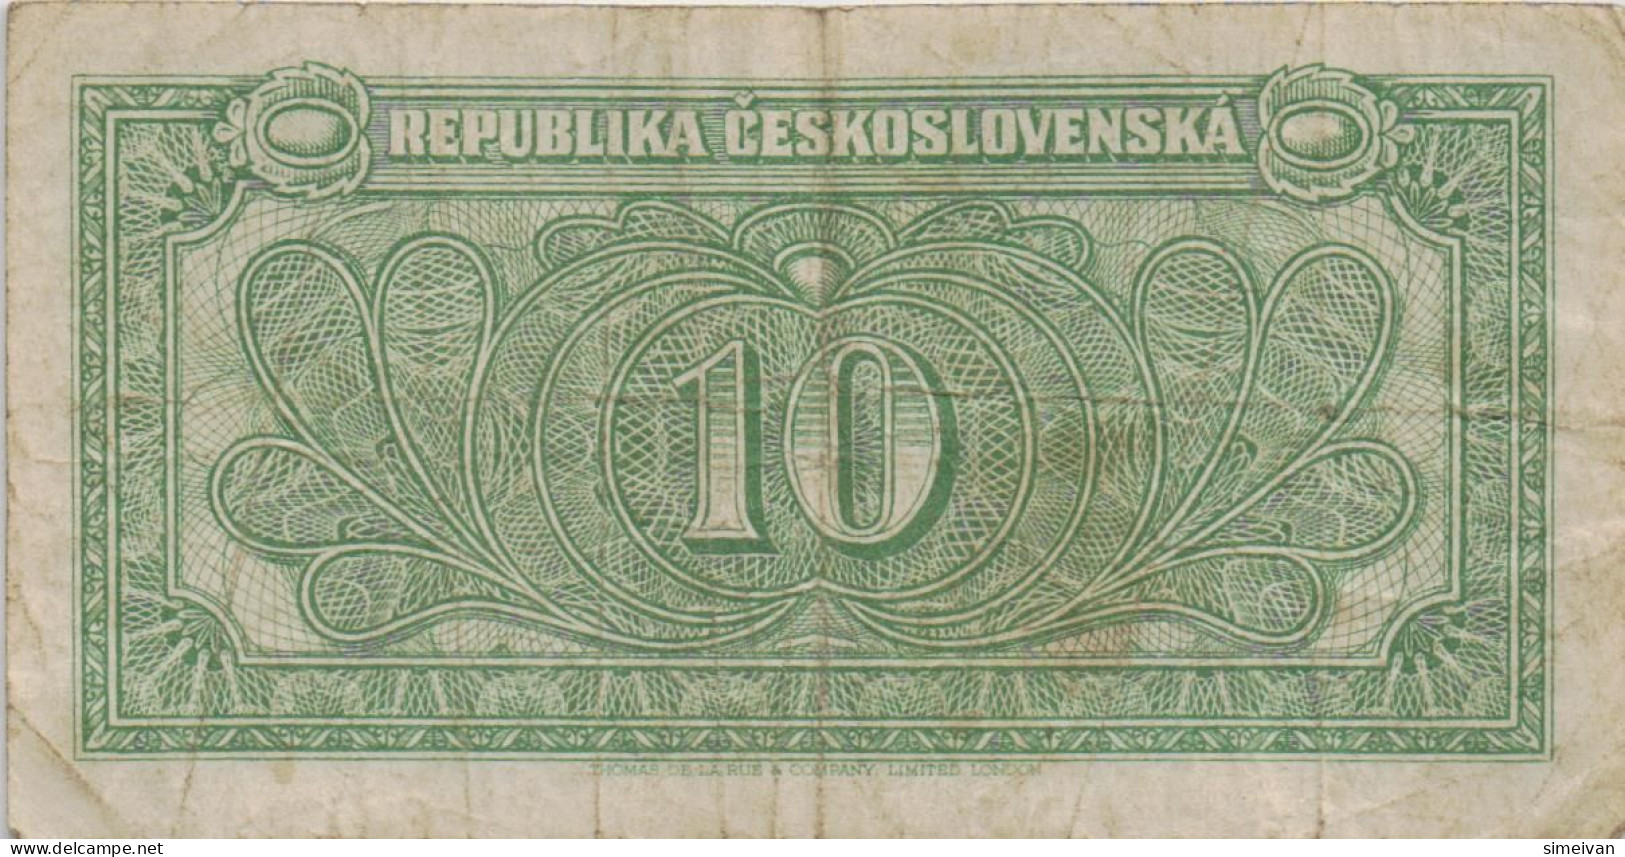 Czechoslovakia 10 Korun ND (1945) P-60a Banknote Europe Currency Tchécoslovaquie Tschechoslowakei #5226 - Tchécoslovaquie